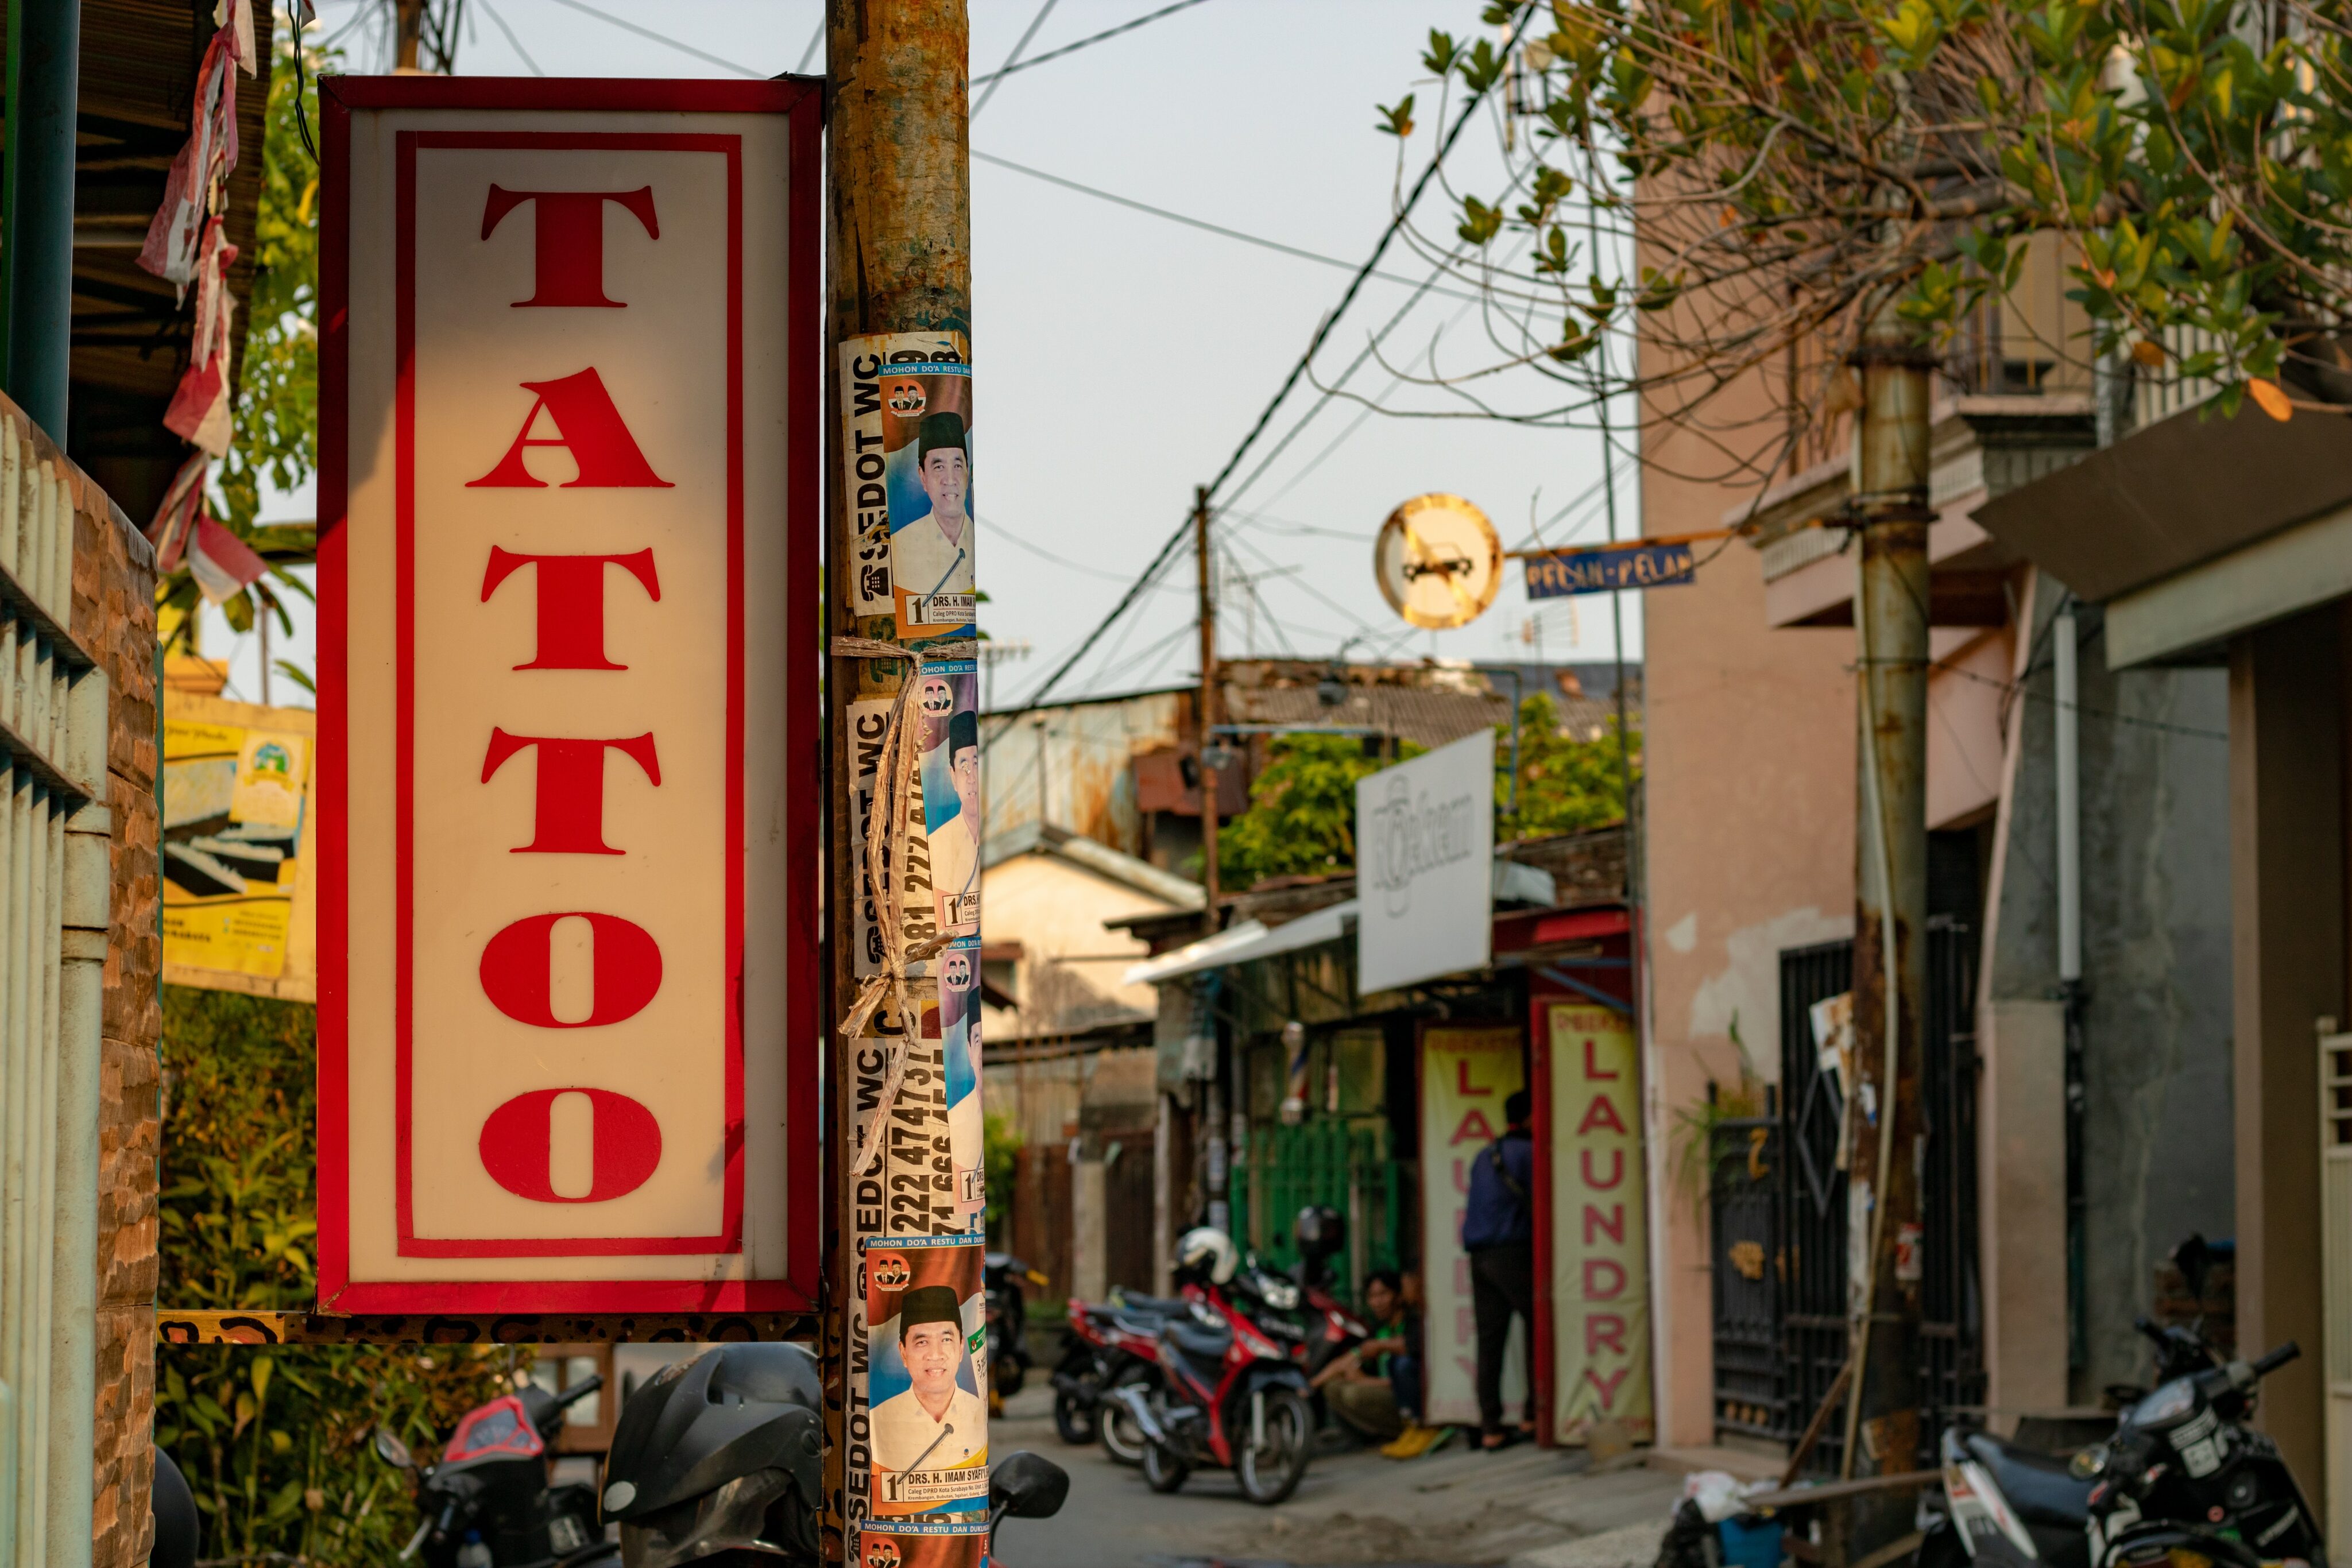 Leberentzündung:Werbung für ein Tattoostudio in geschäftiger Strasse im Sommer